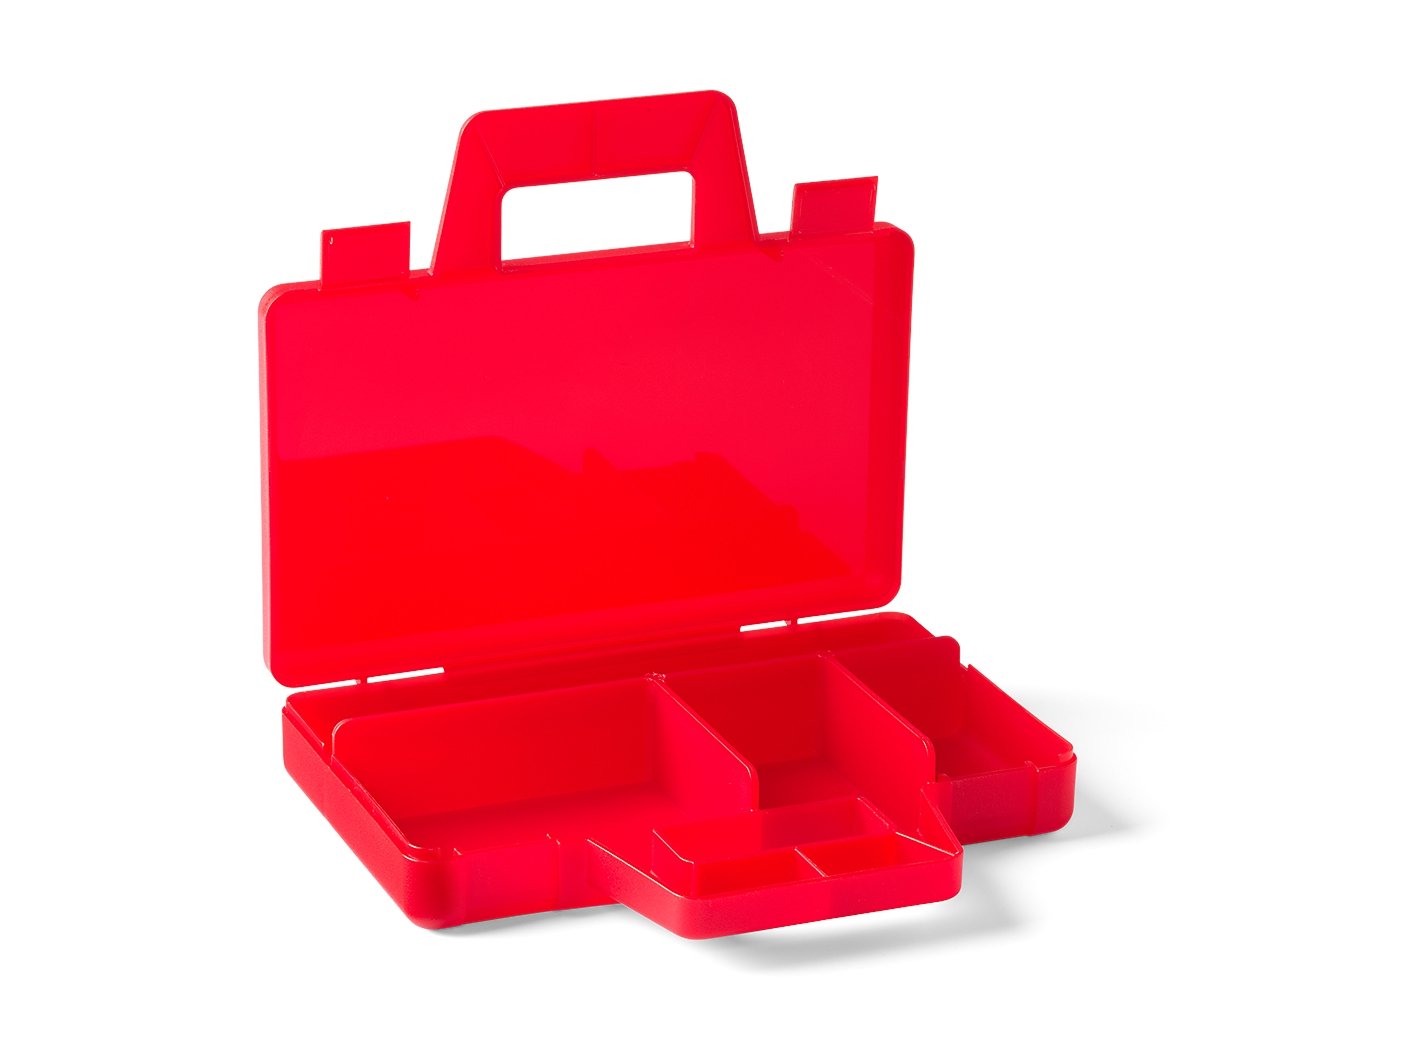 LEGO Przezroczysta czerwona przenośna walizka do sortowania 5005769